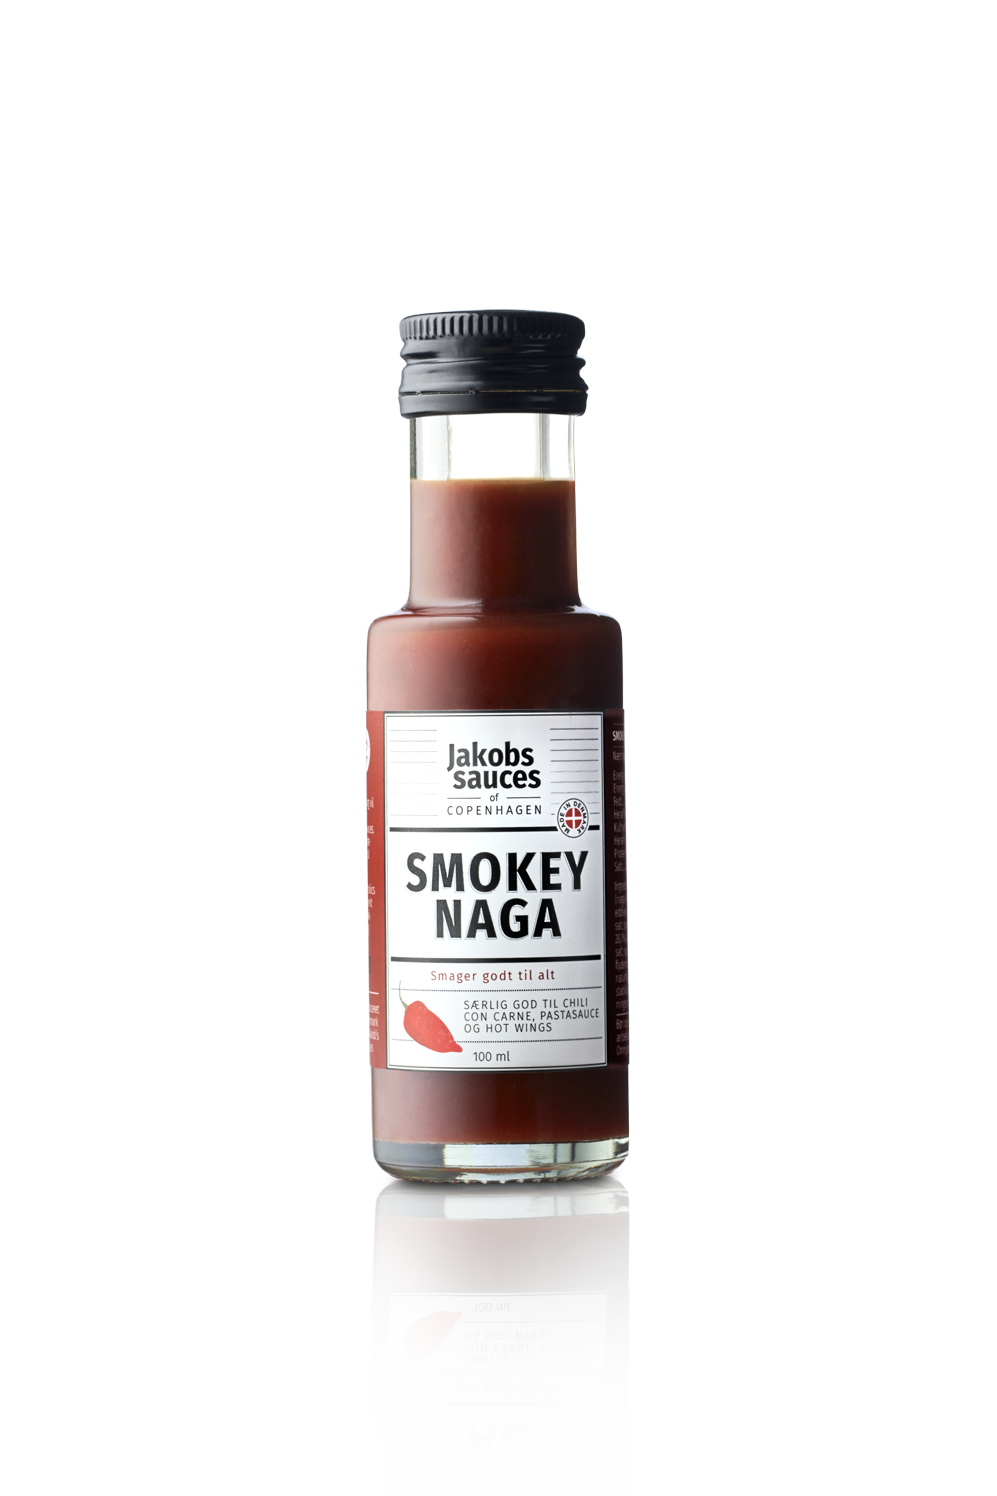 Smokey Naga Hot Sauce